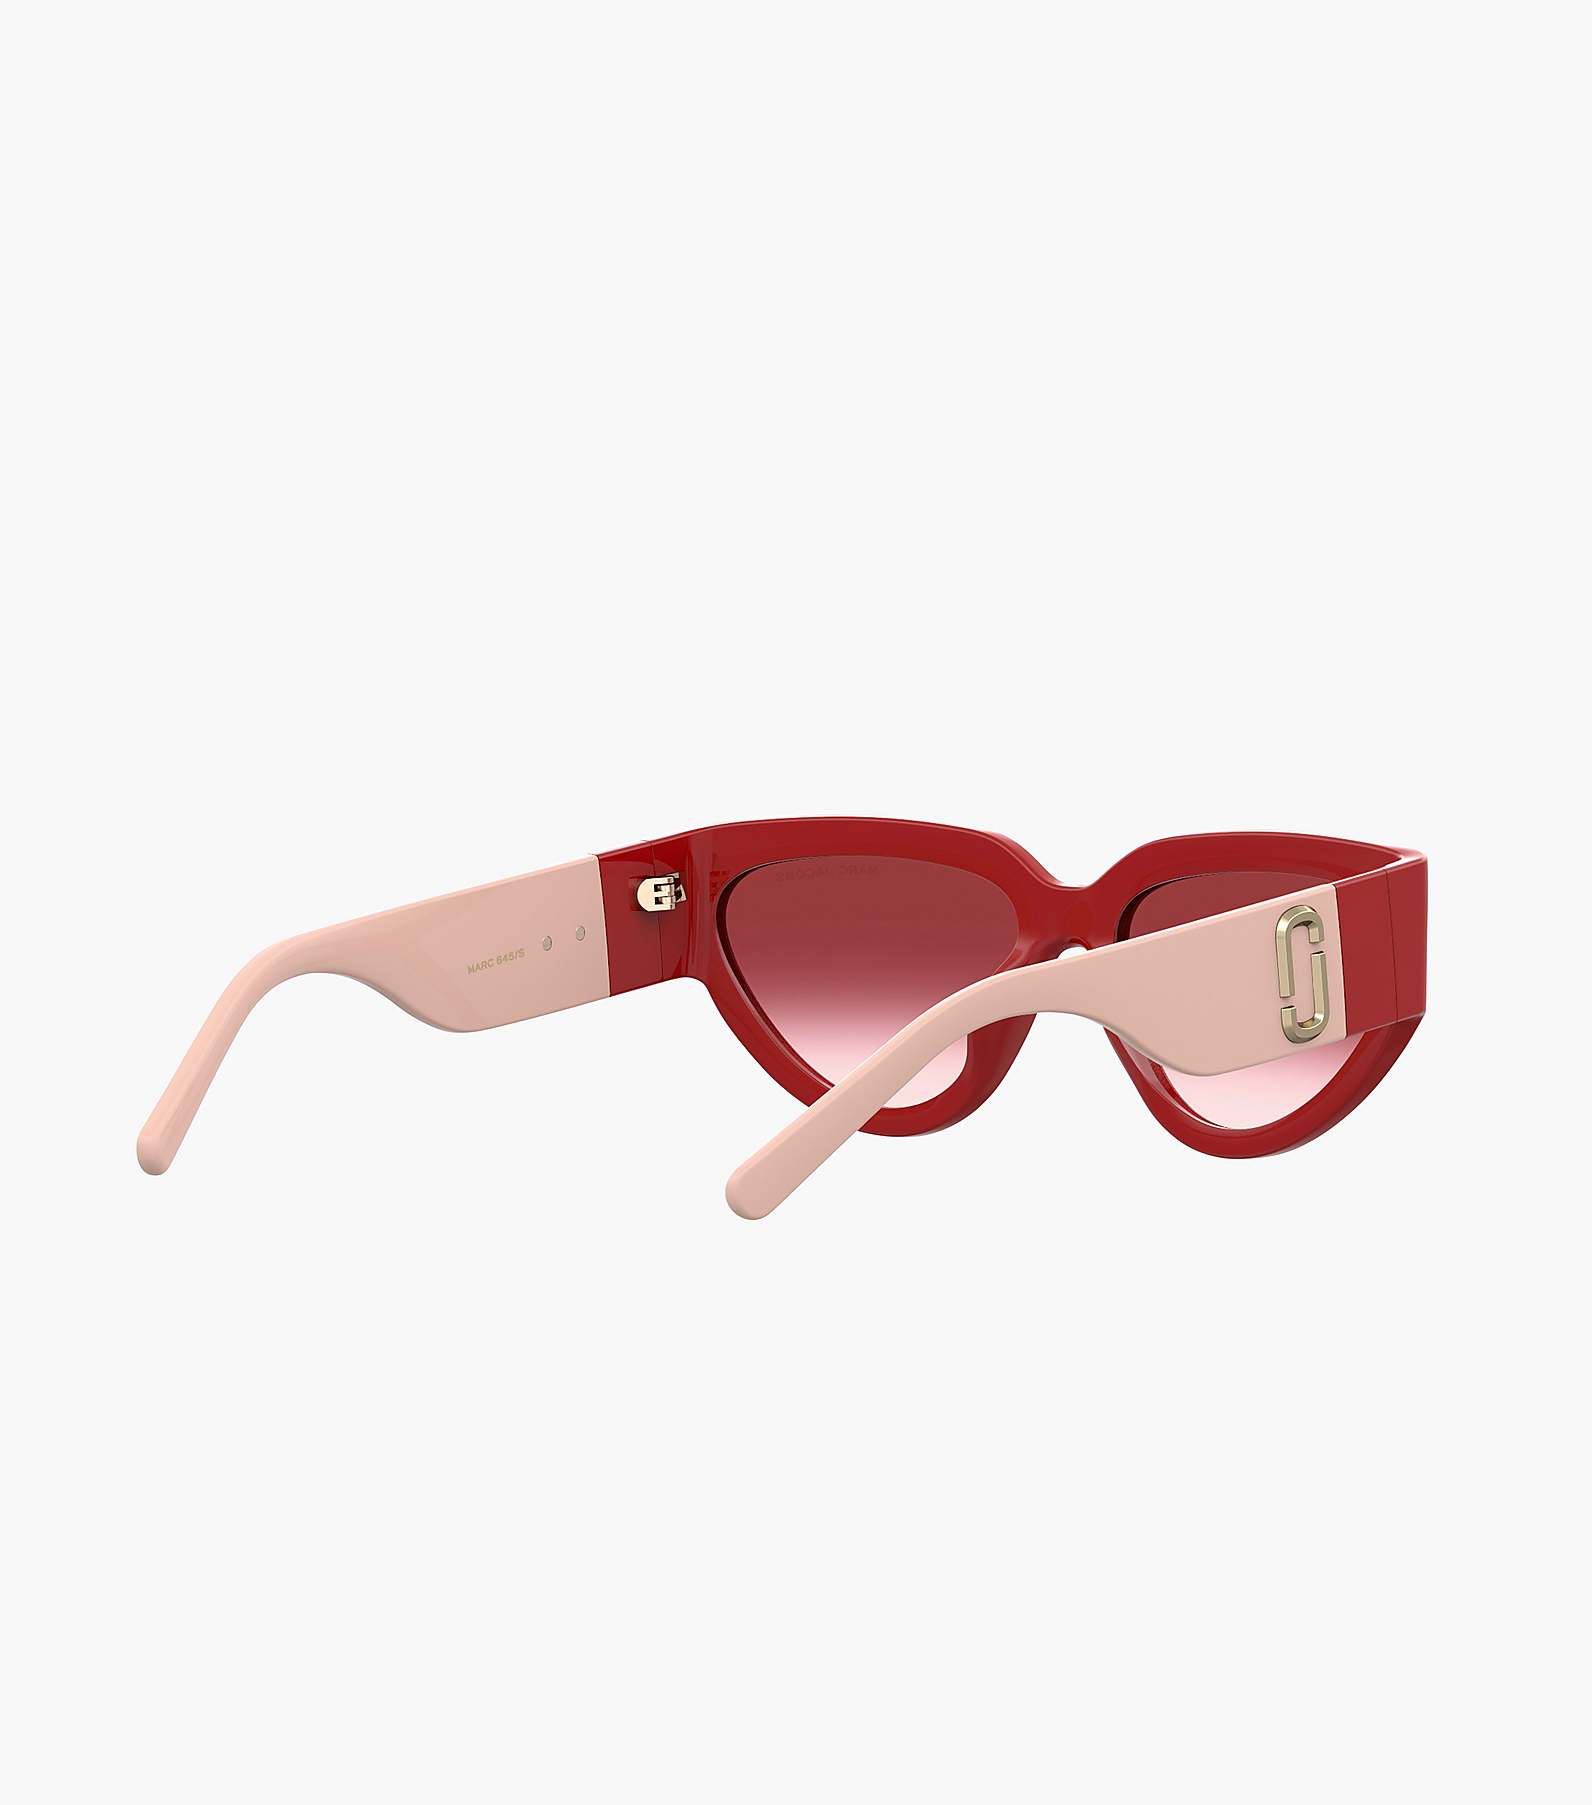 J Marc Cat Eye Sunglasses(Sunglasses)